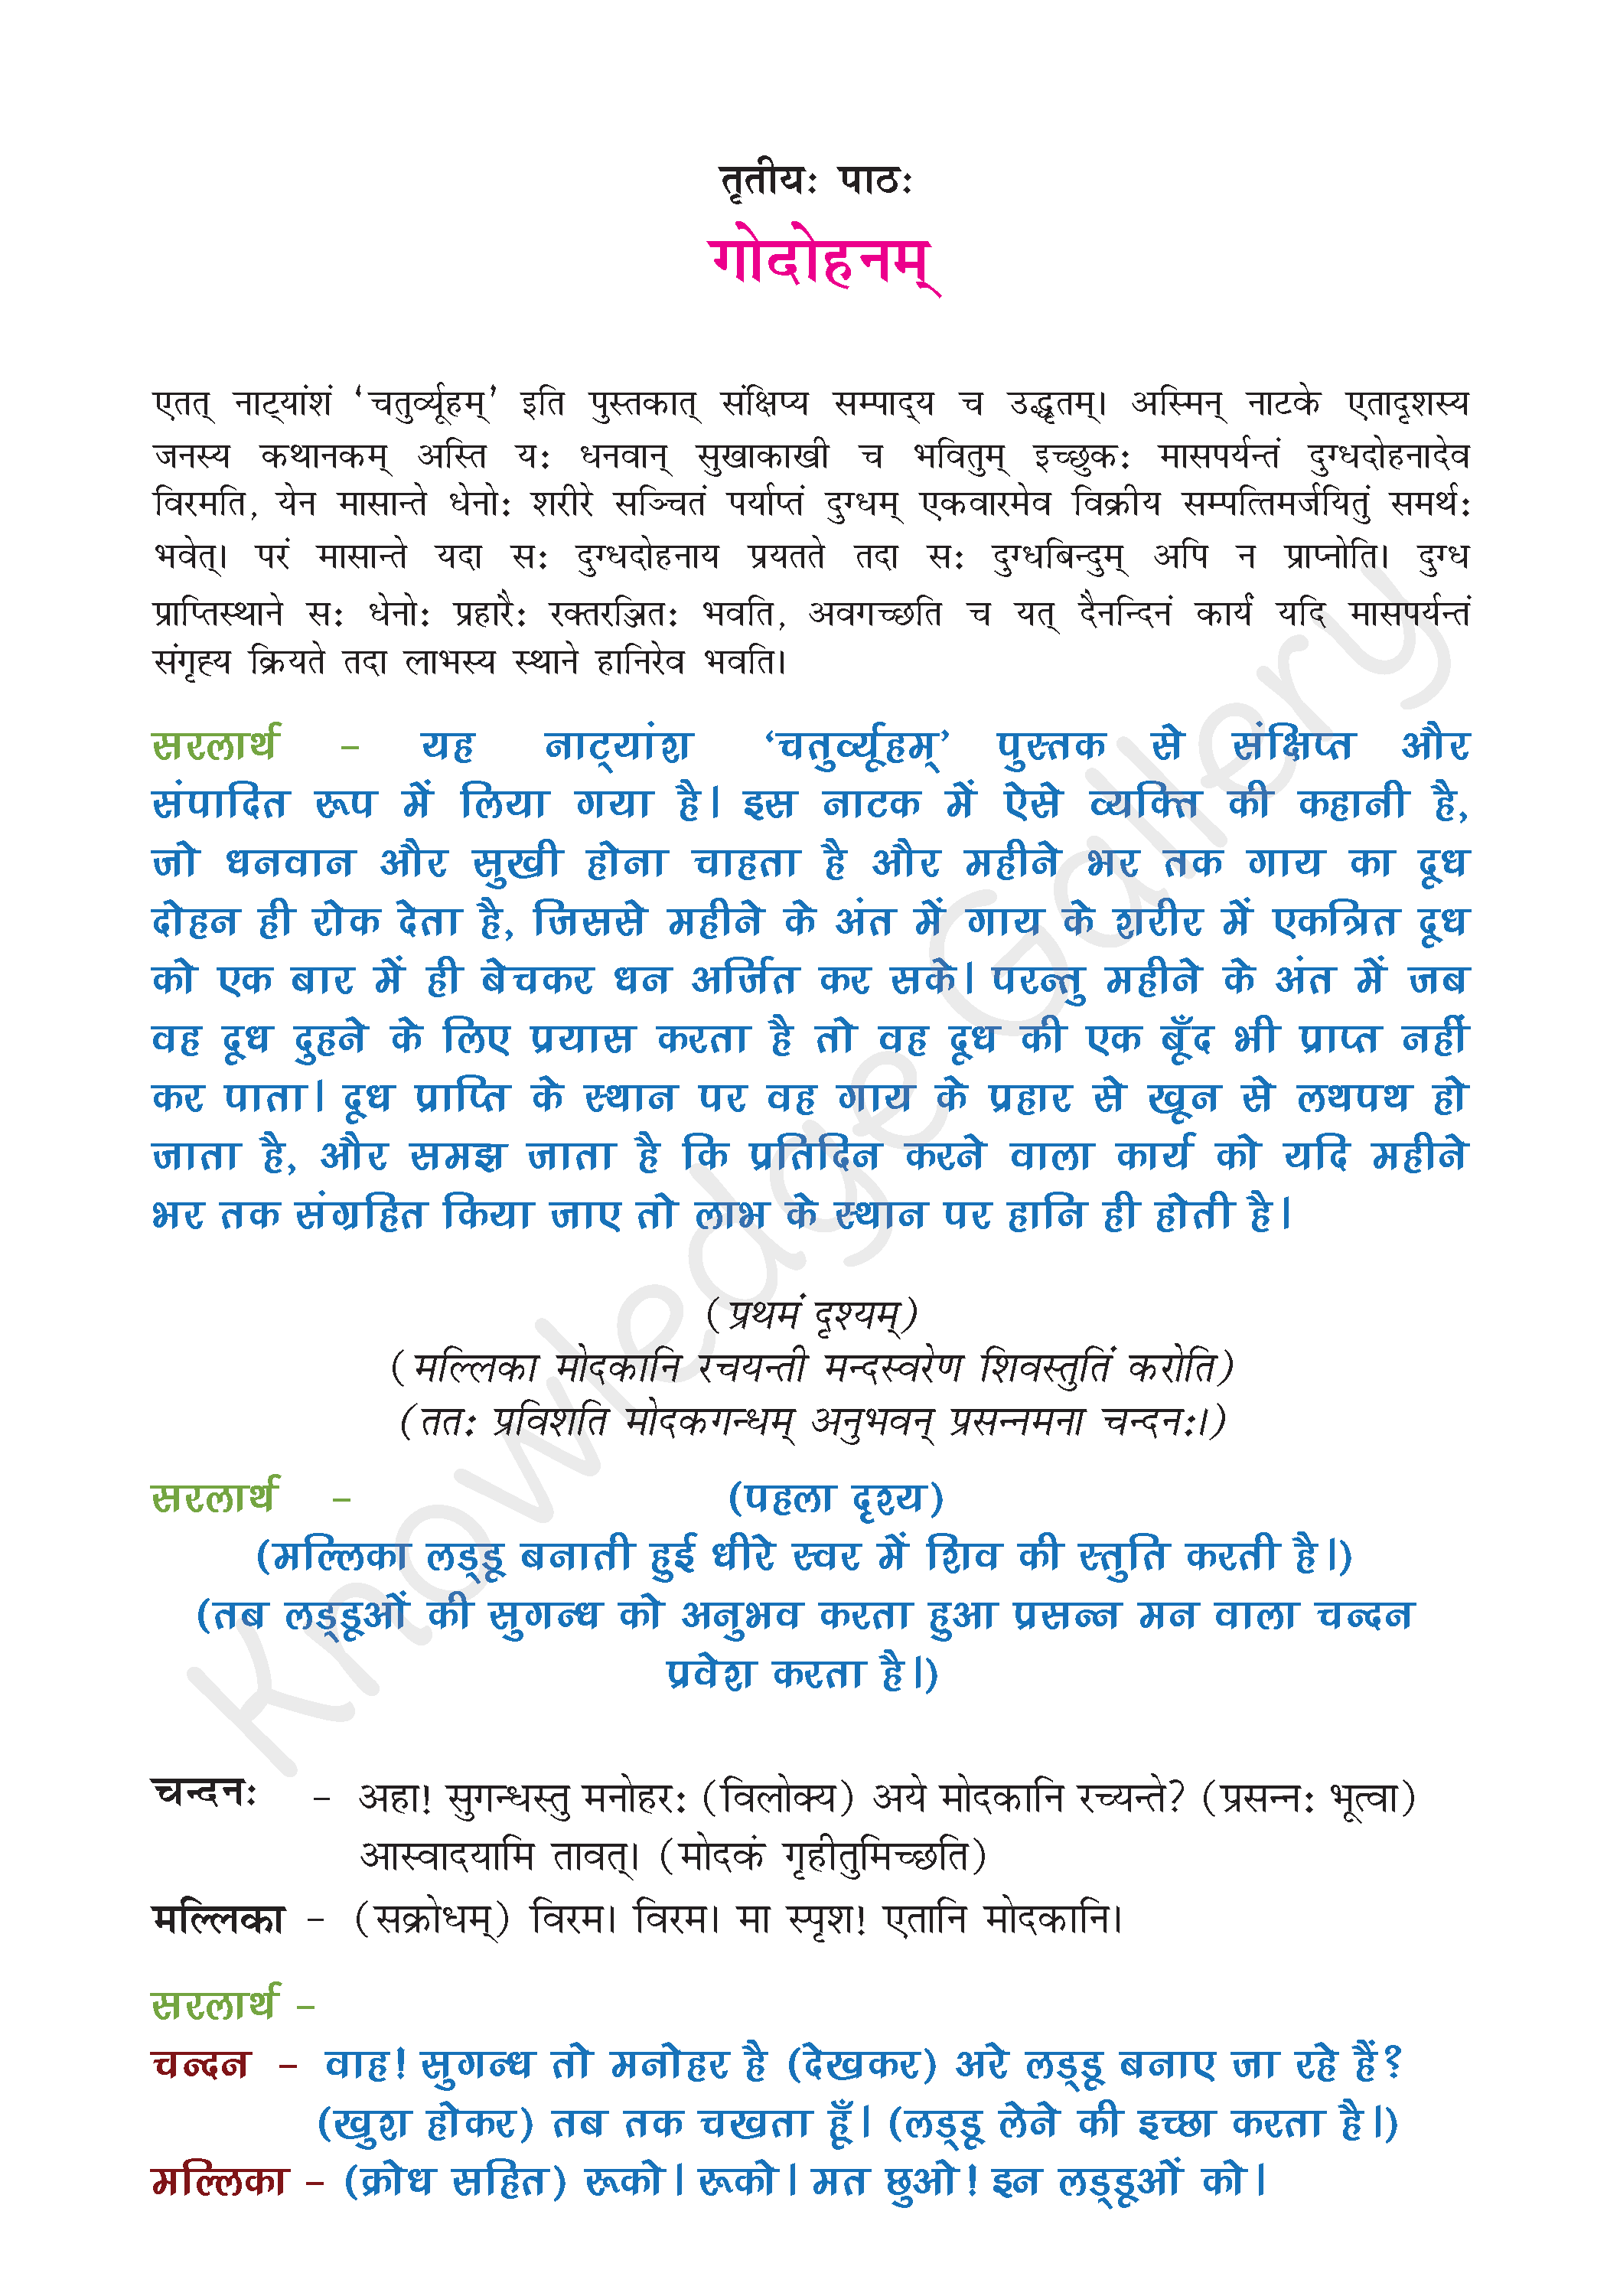 NCERT Solution For Class 9 Sanskrit Chapter 3 part 1